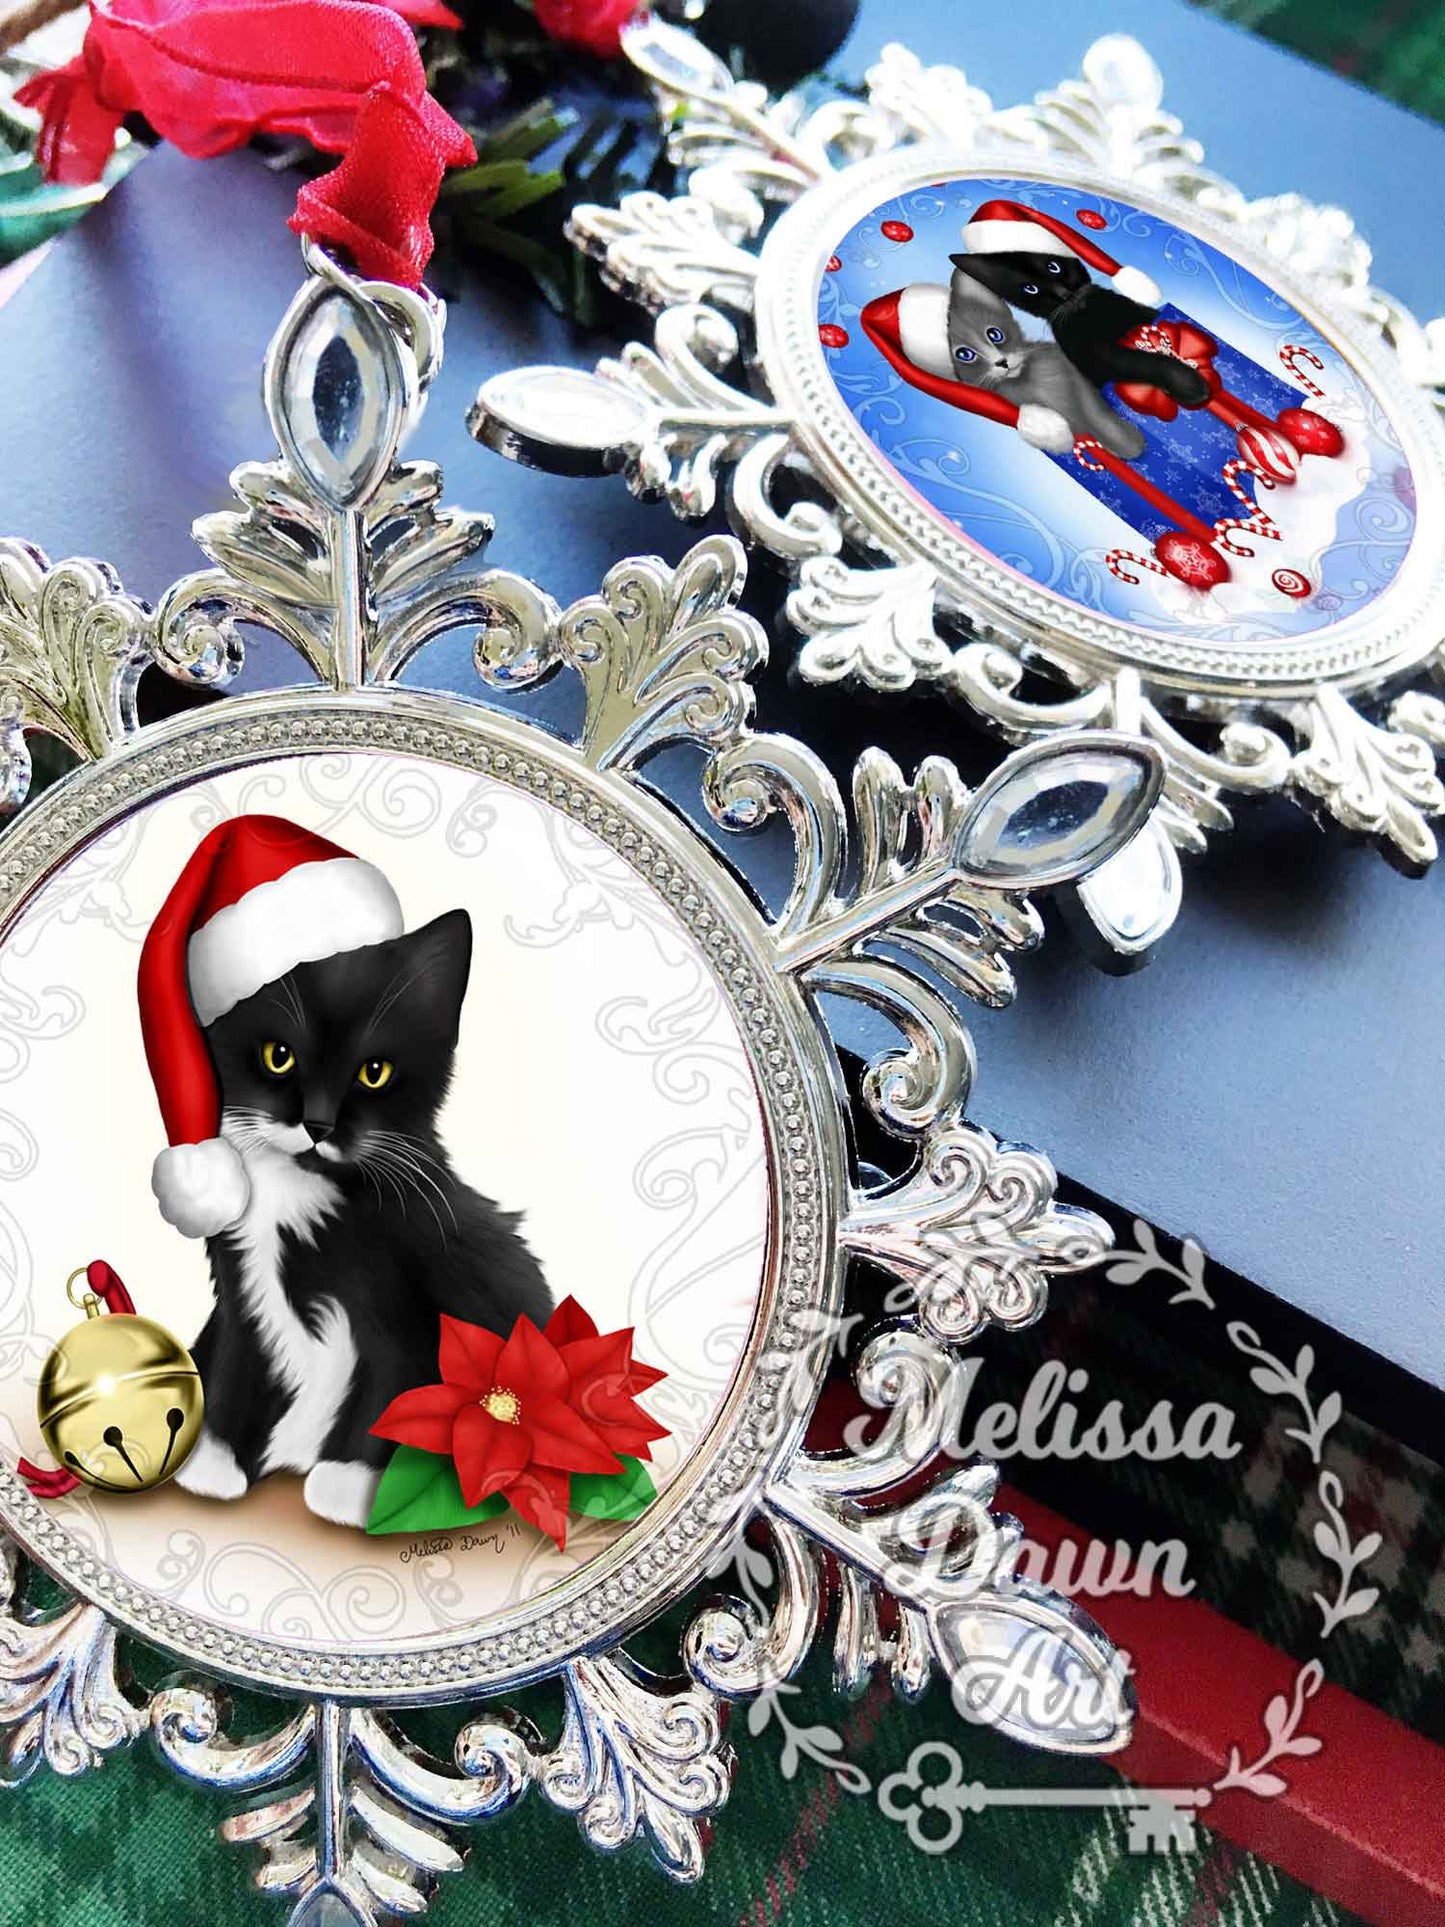 Black Cat Ornament / Personalized Cat Ornament / Cat Ornament / Cat Lovers Gift / Cat Memorial Ornament / Tea Ornament / Custom Cat Ornament